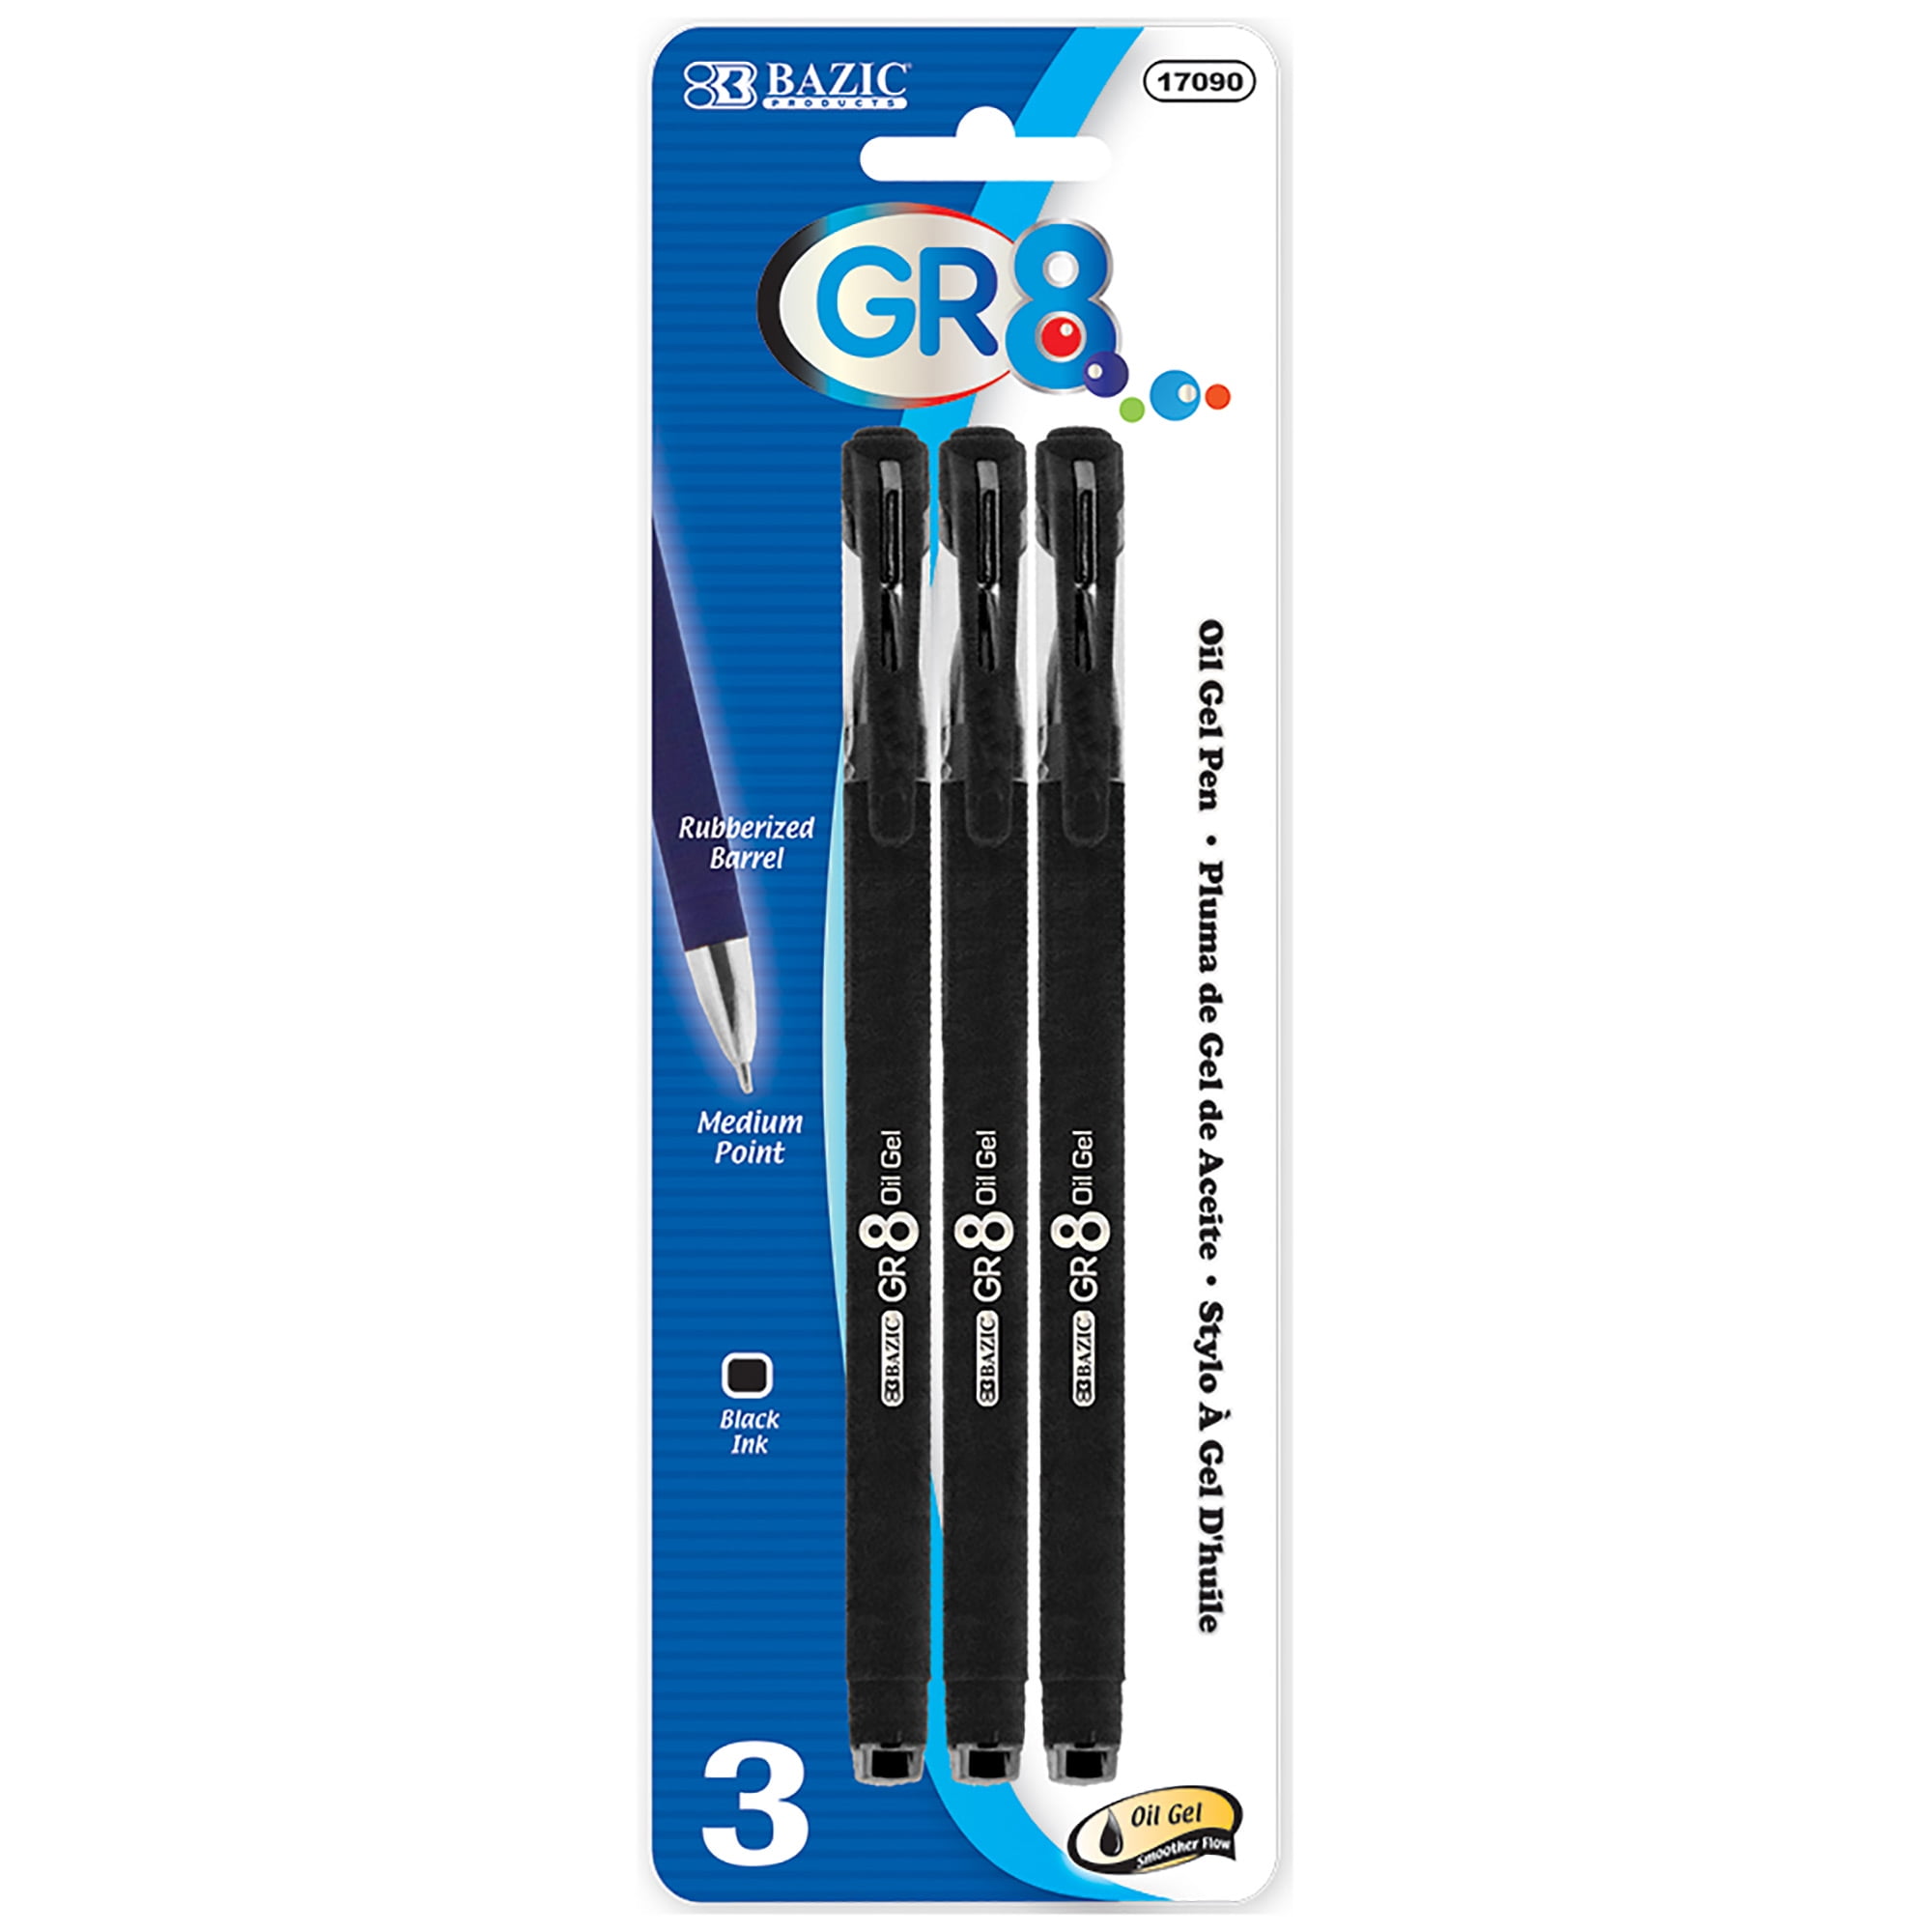 Bazic 2319623 Ddi Gr8 Black Oil-gel Ink Pen With Rubberized Barrel - Case Of 24